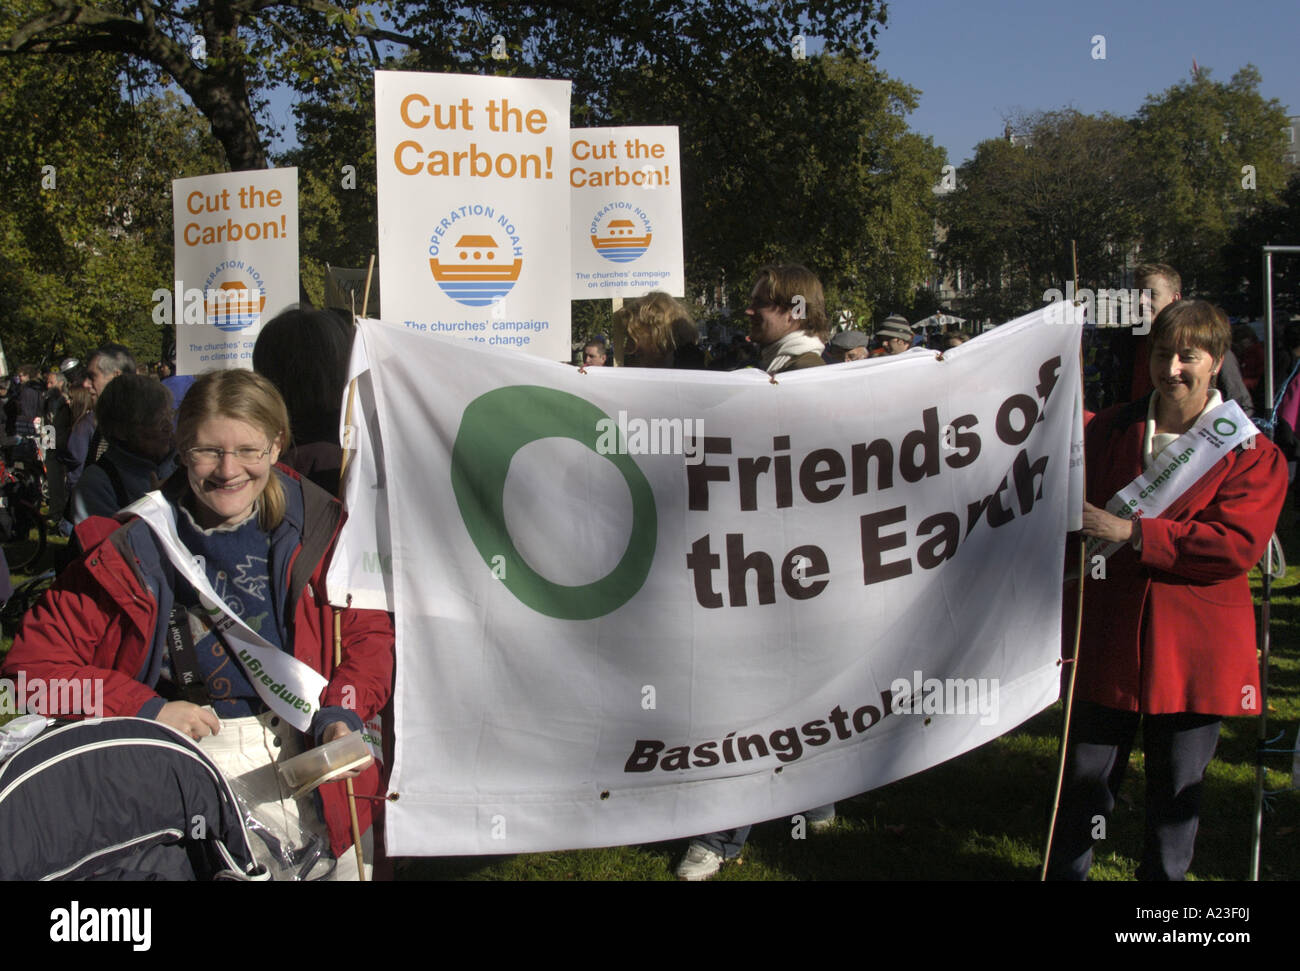 Feind Basisngstoke vor der amerikanischen Botschaft vor i Graf-Klima-Änderung-Demonstration in Trafalgar Sq London marschieren Stockfoto